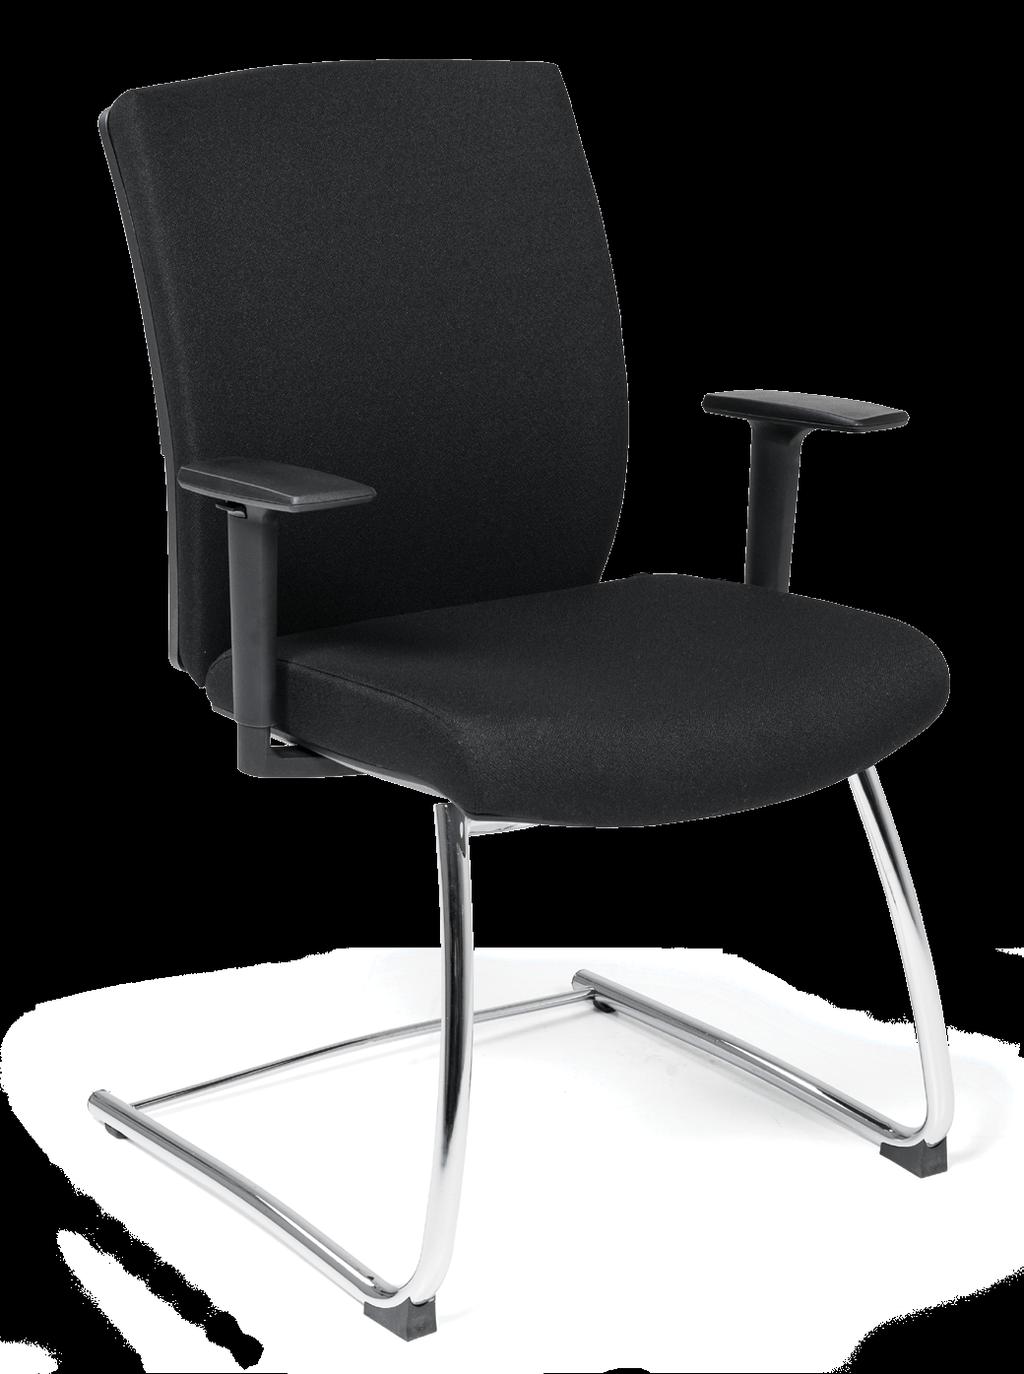 Projetável Proyectable + Uma cadeira adaptada ao conforto e desempenho do dia a dia.